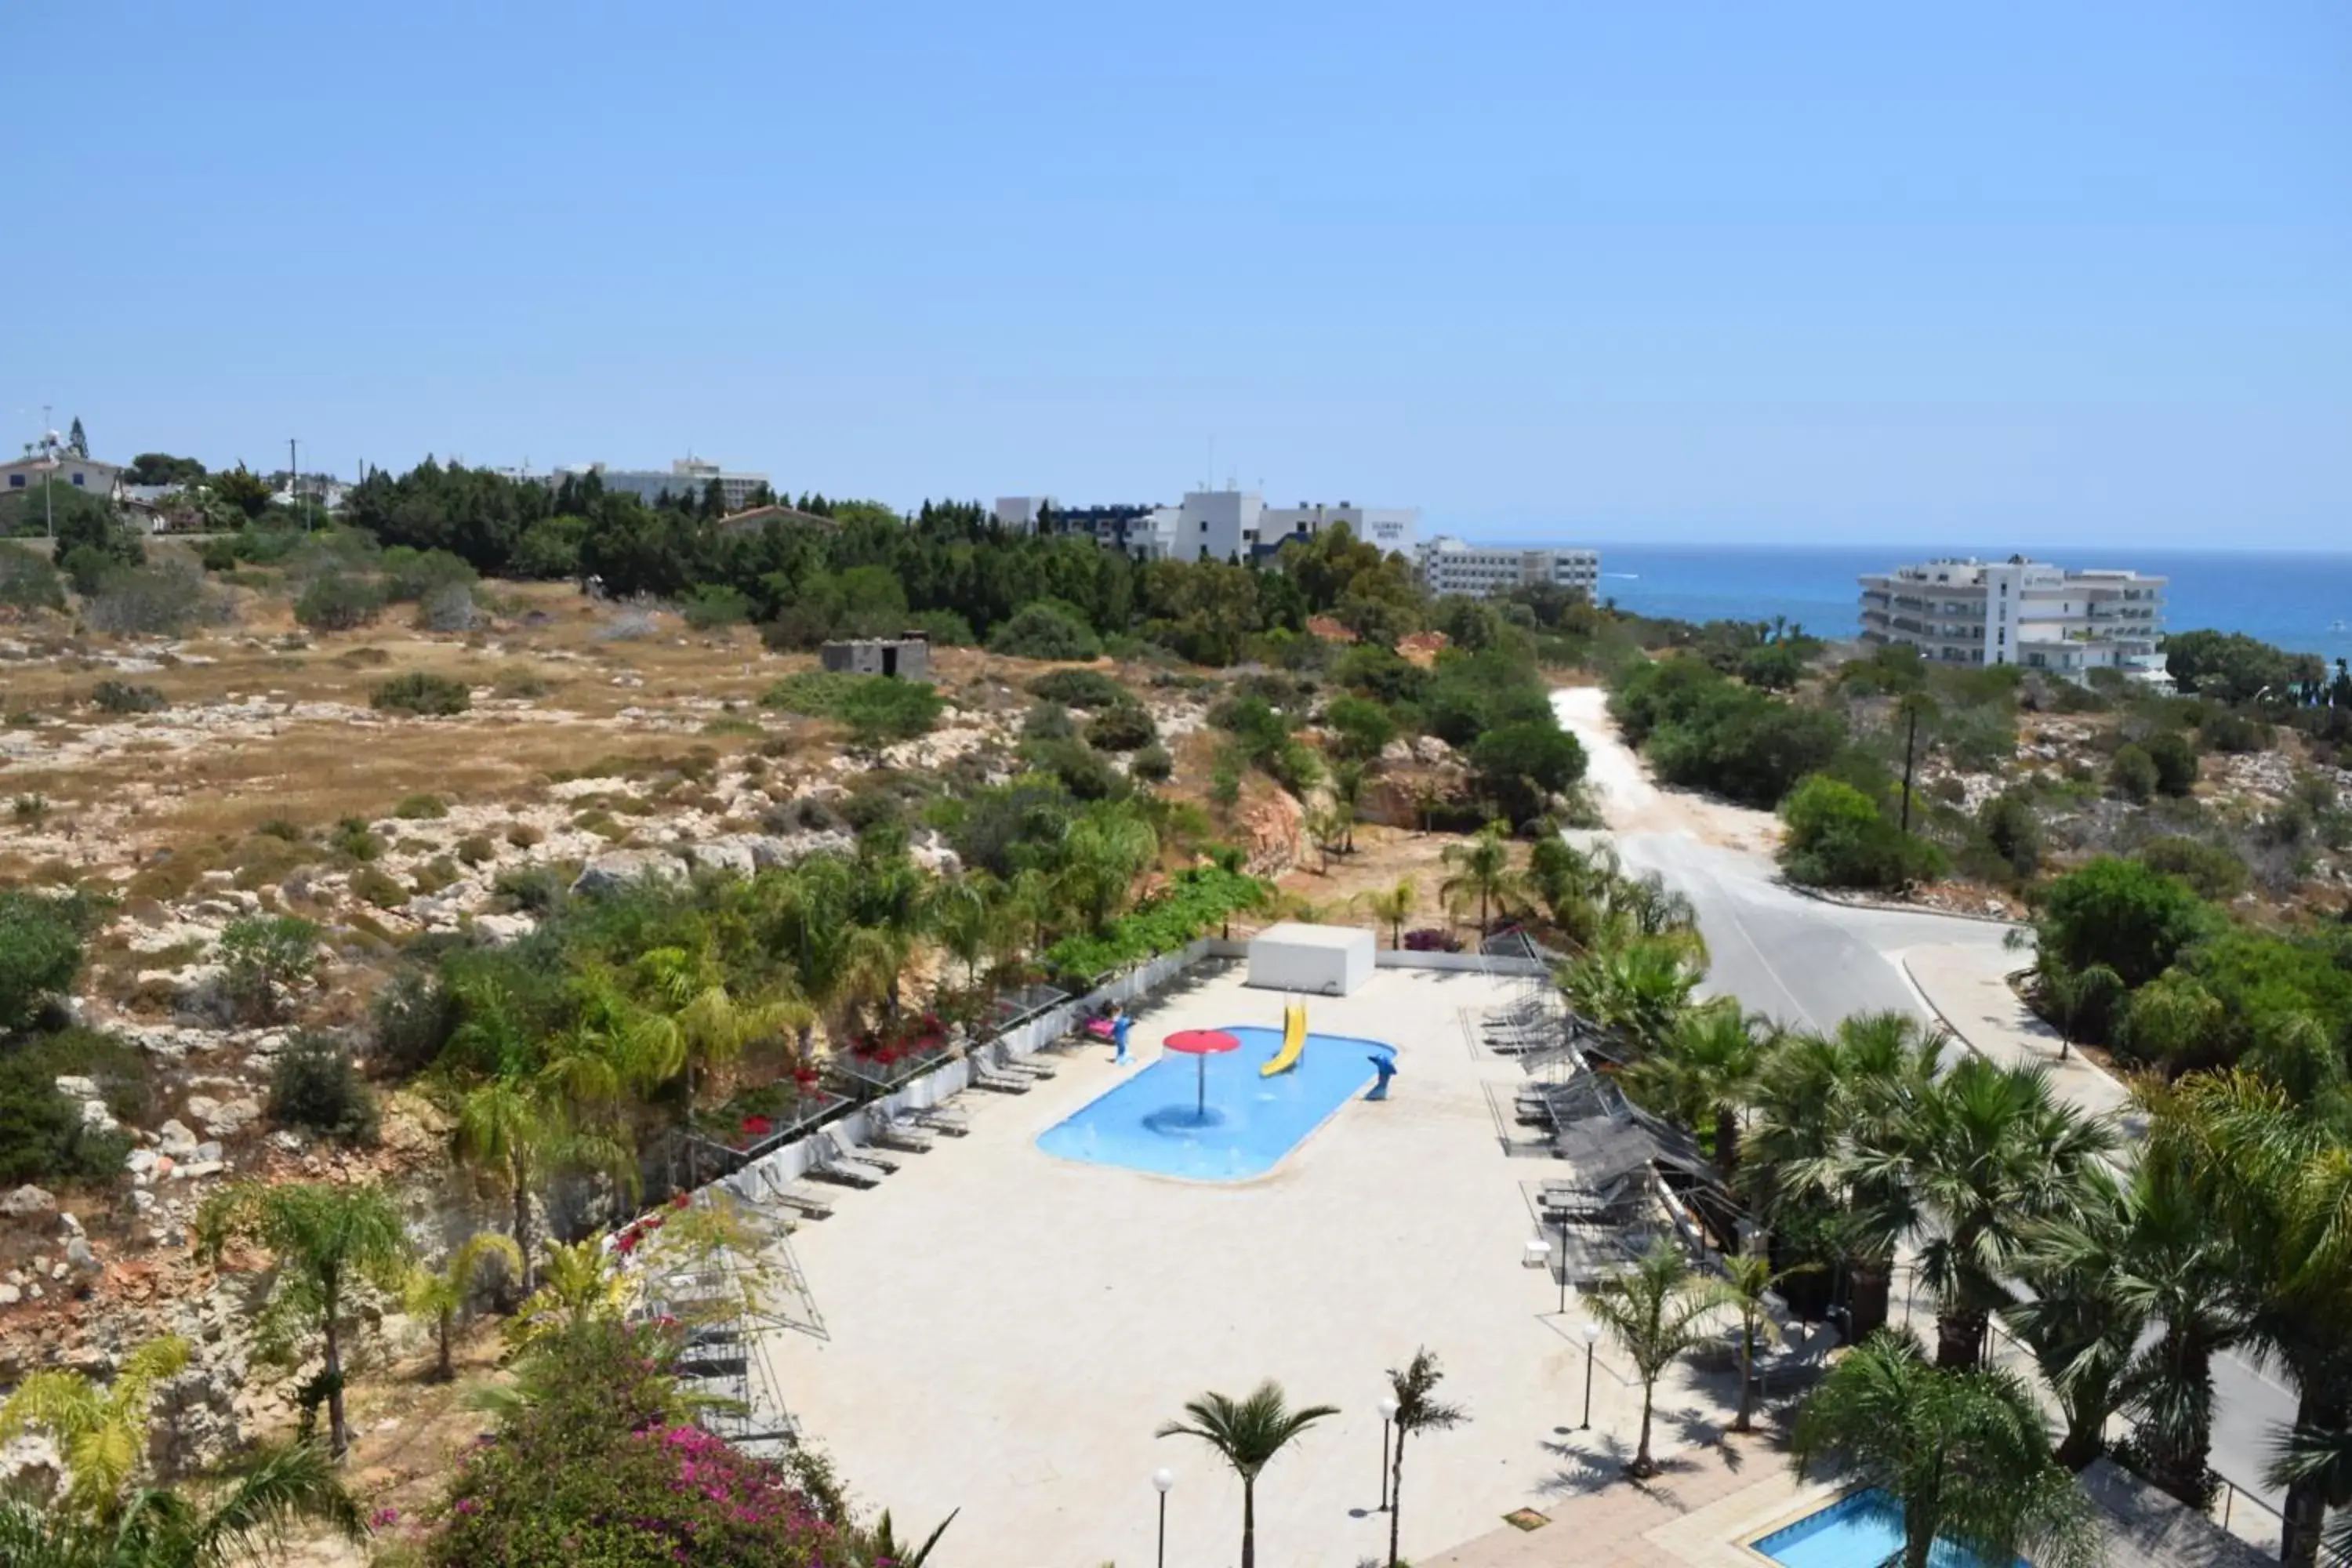 Pool View in Corfu Hotel